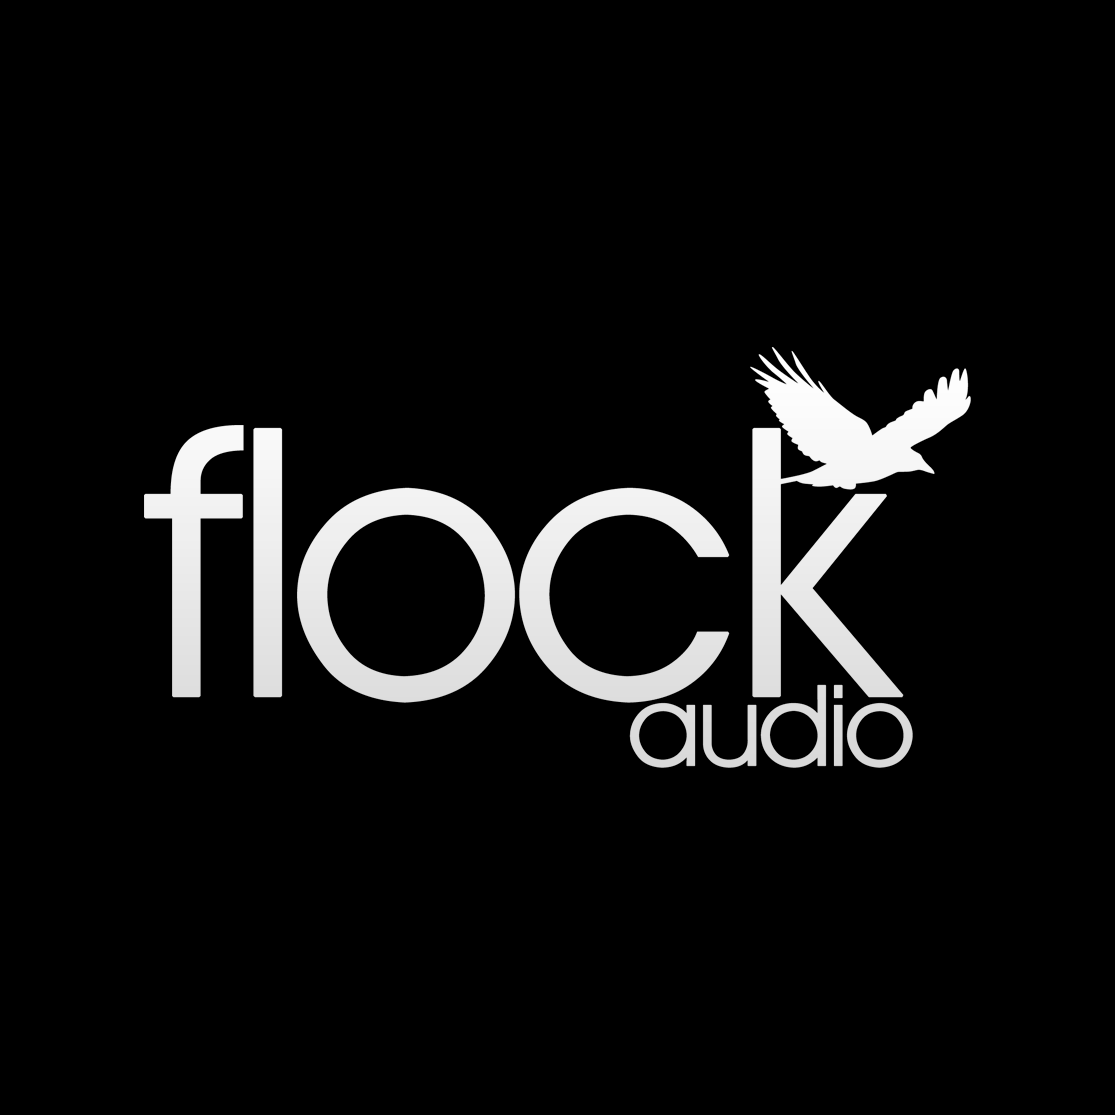 www.flockaudio.com